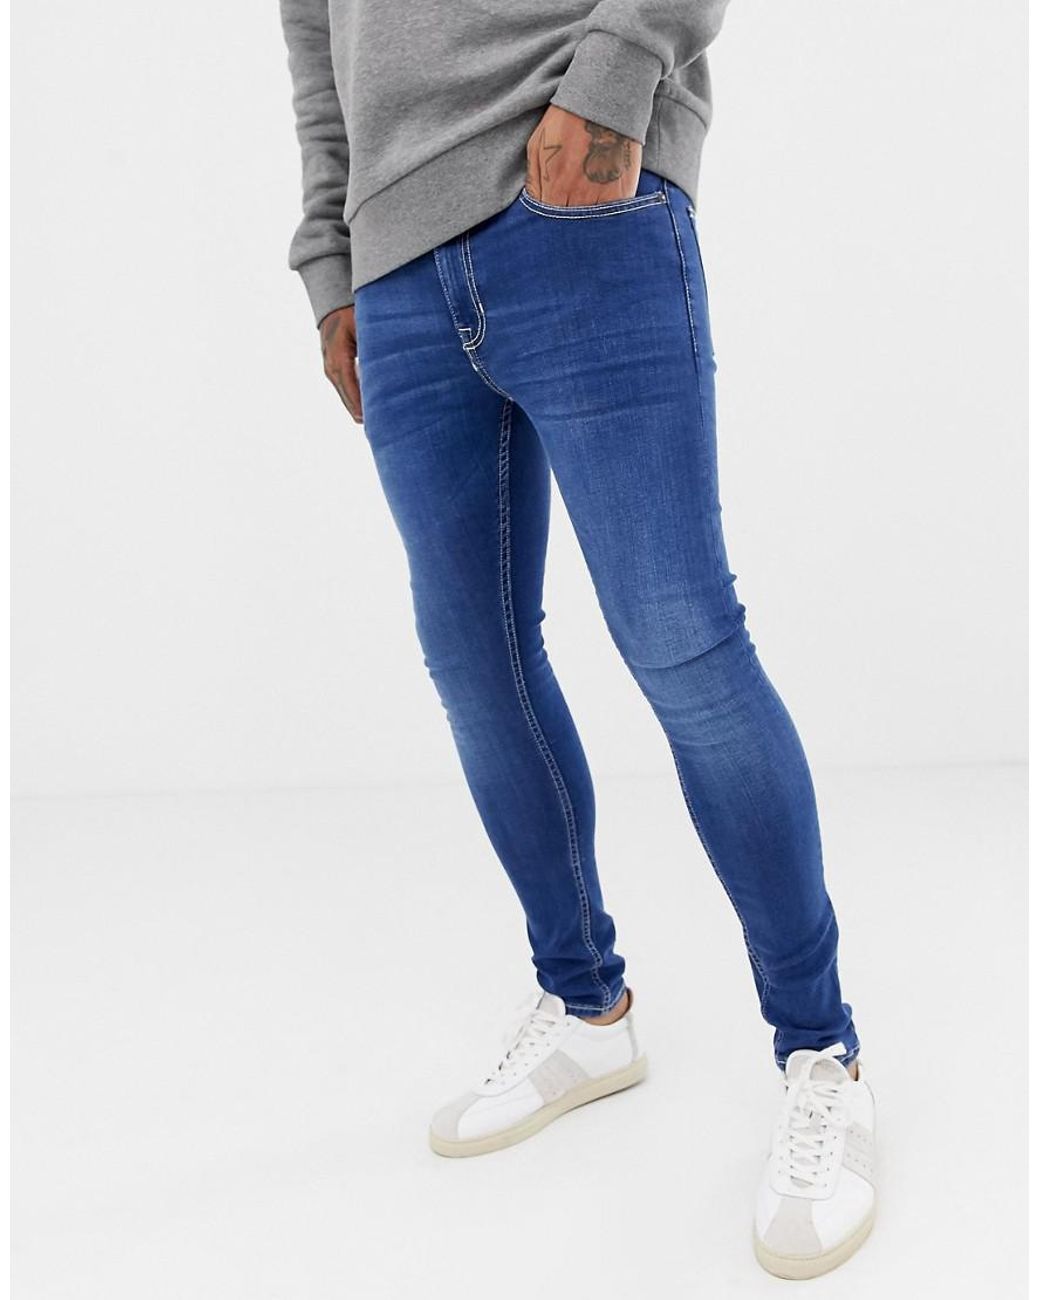 New jeans фото. Скинни джинсы New Yorker мужские. Джинсы супер скинни мужские. Джинсы скинни выбеленные. Новых джинс.